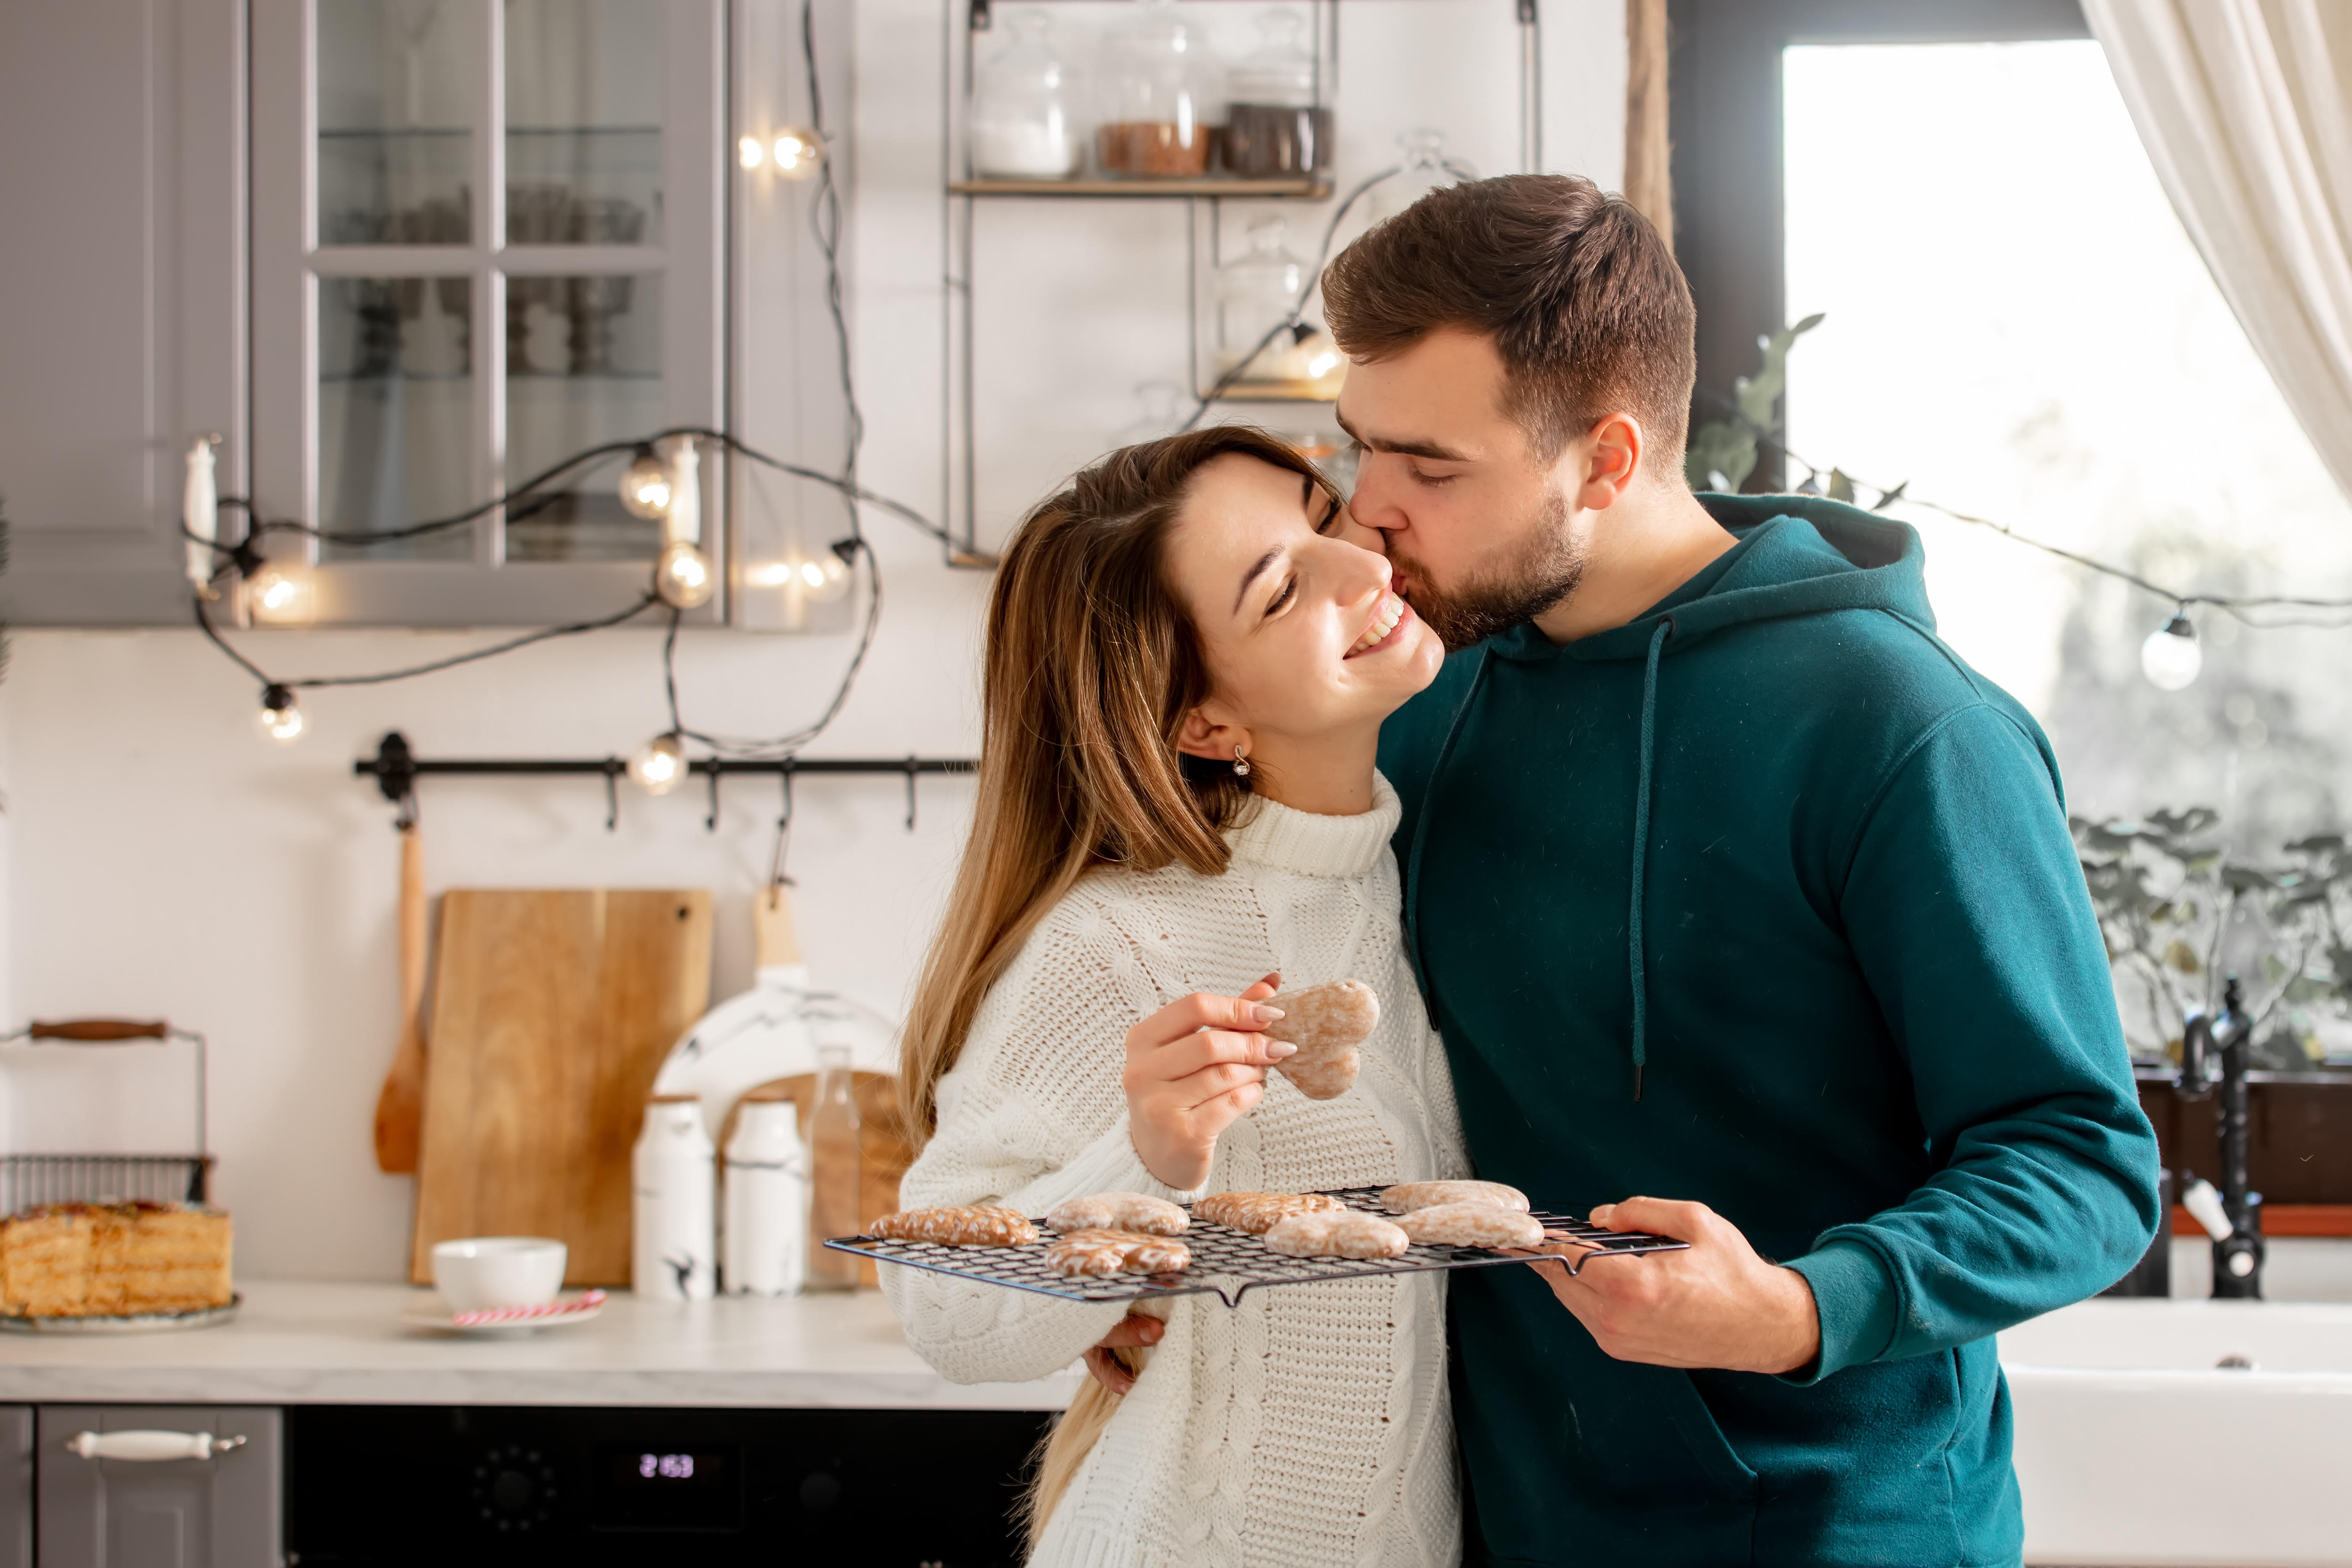 Un mari embrasse sa femme pendant qu'ils préparent des biscuits | Source : Shutterstock